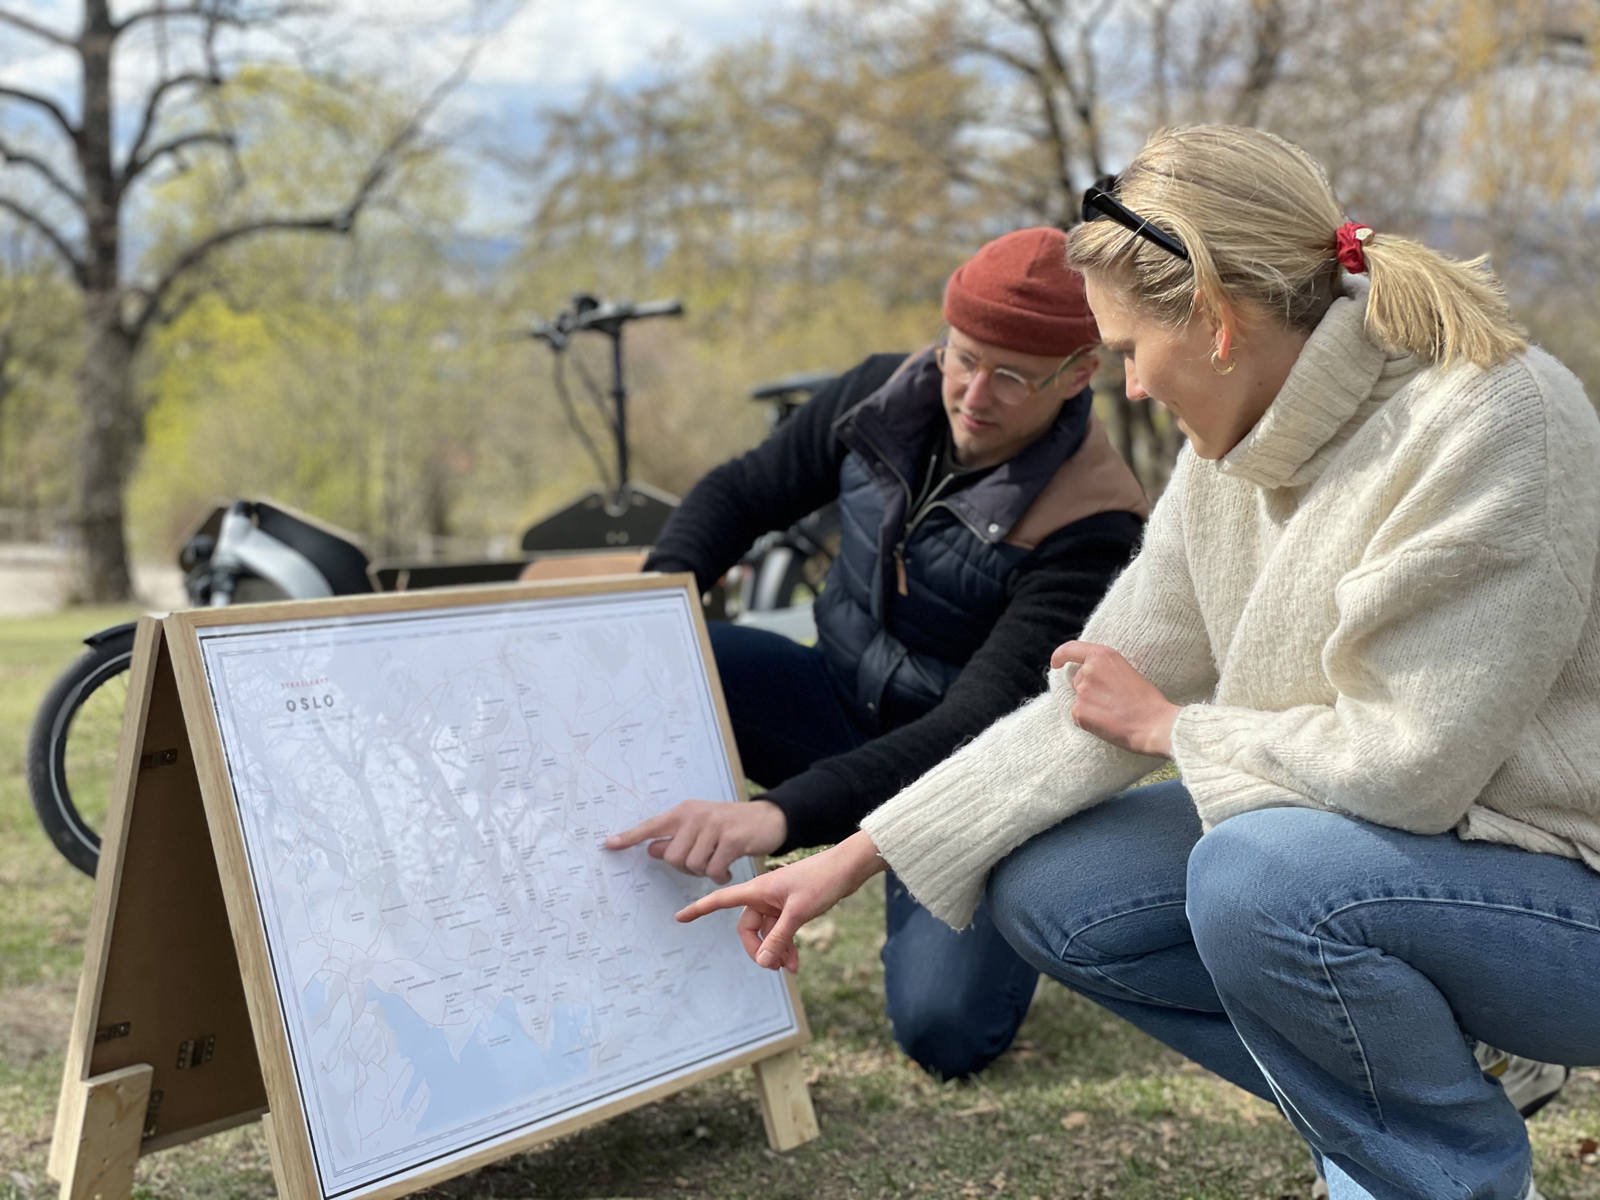 Daniel Andersson og en dame sitter på huk i en park og ser på et kart. Foto.